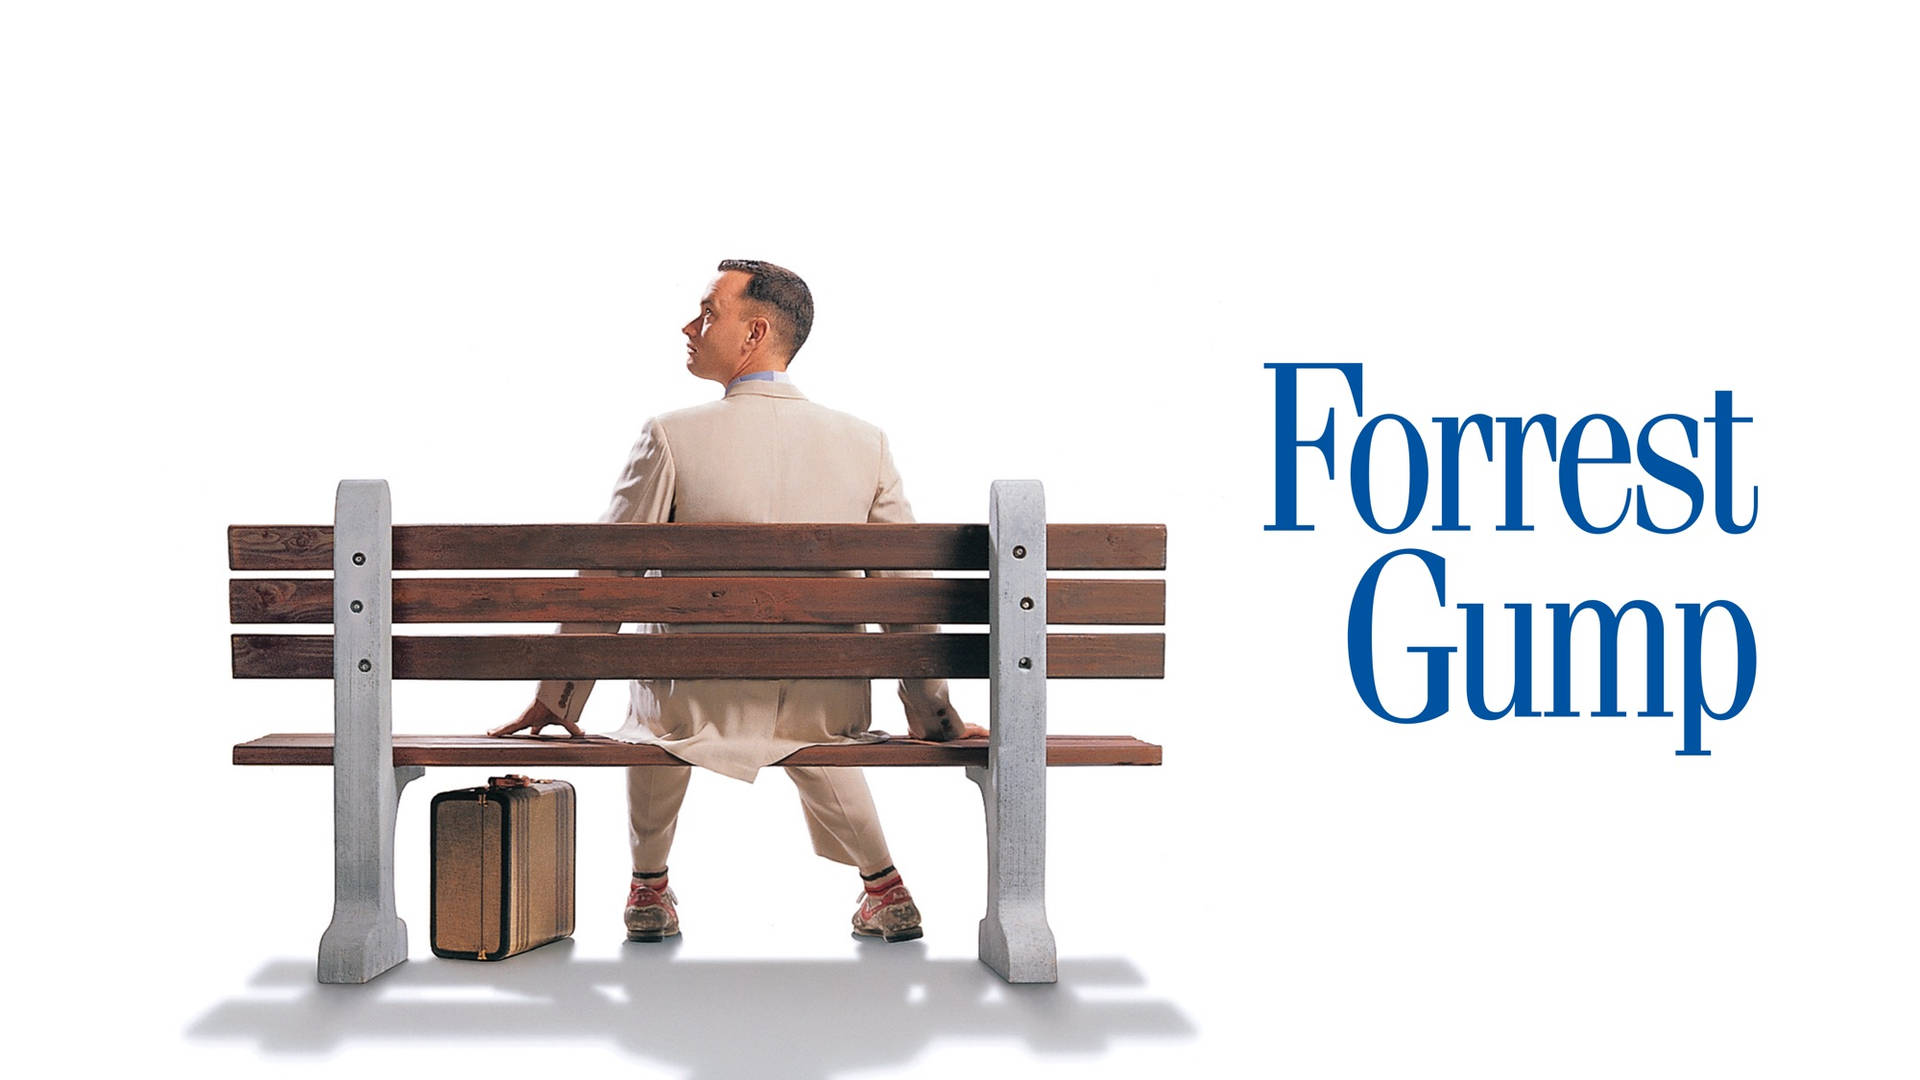 Tom Hanks Quality Forrest Gump Poster Background